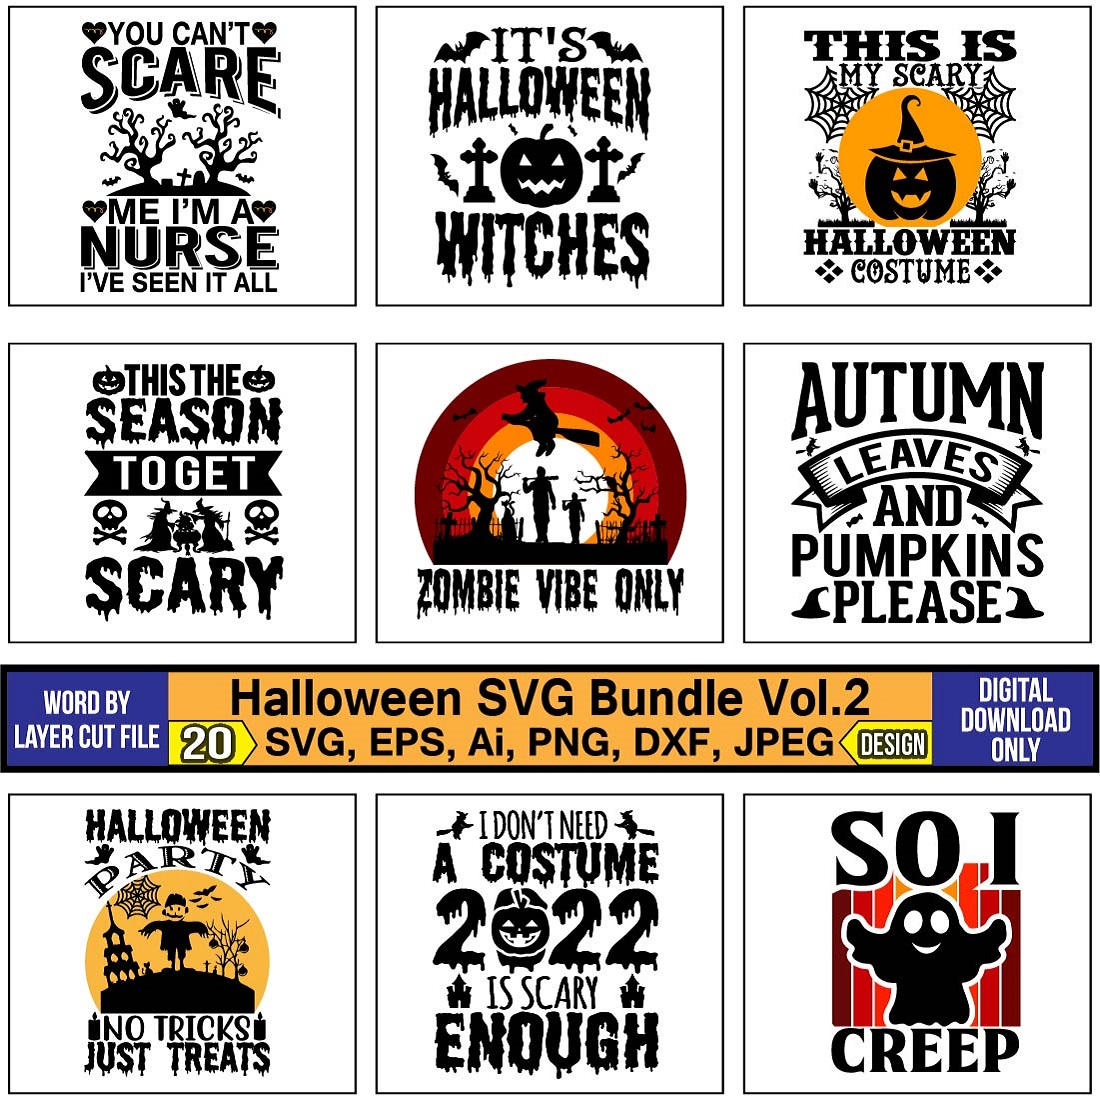 T-Shirt Halloween SVG Design Bundle cover image.